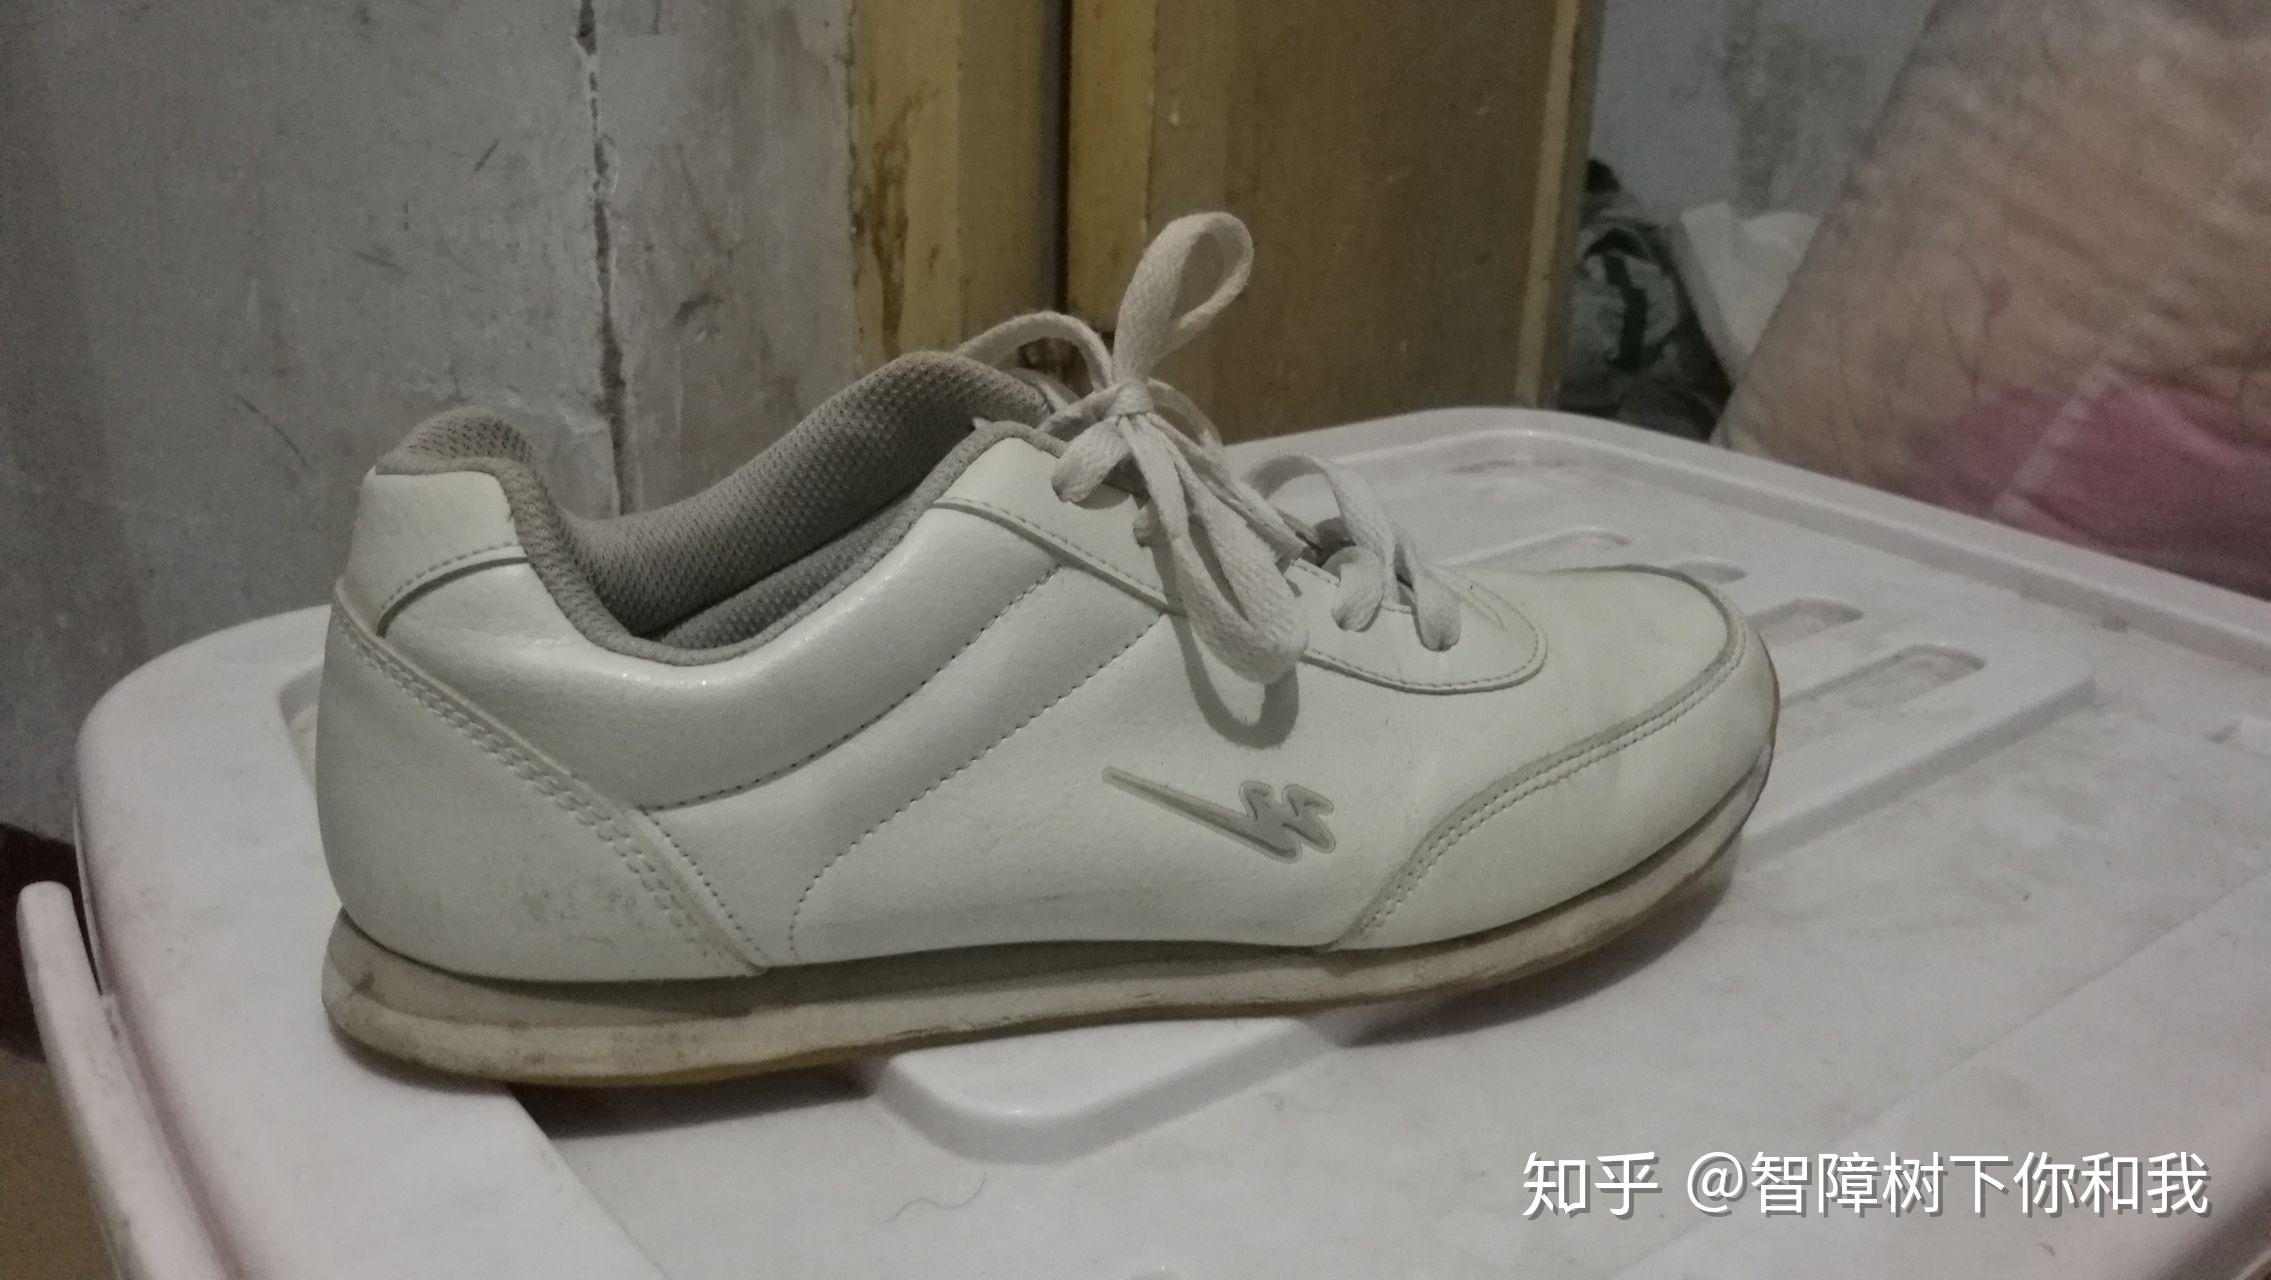 特价 120元 双星运动鞋 慢跑鞋 男鞋 正品 超轻透气耐磨 712596_angangquanquan